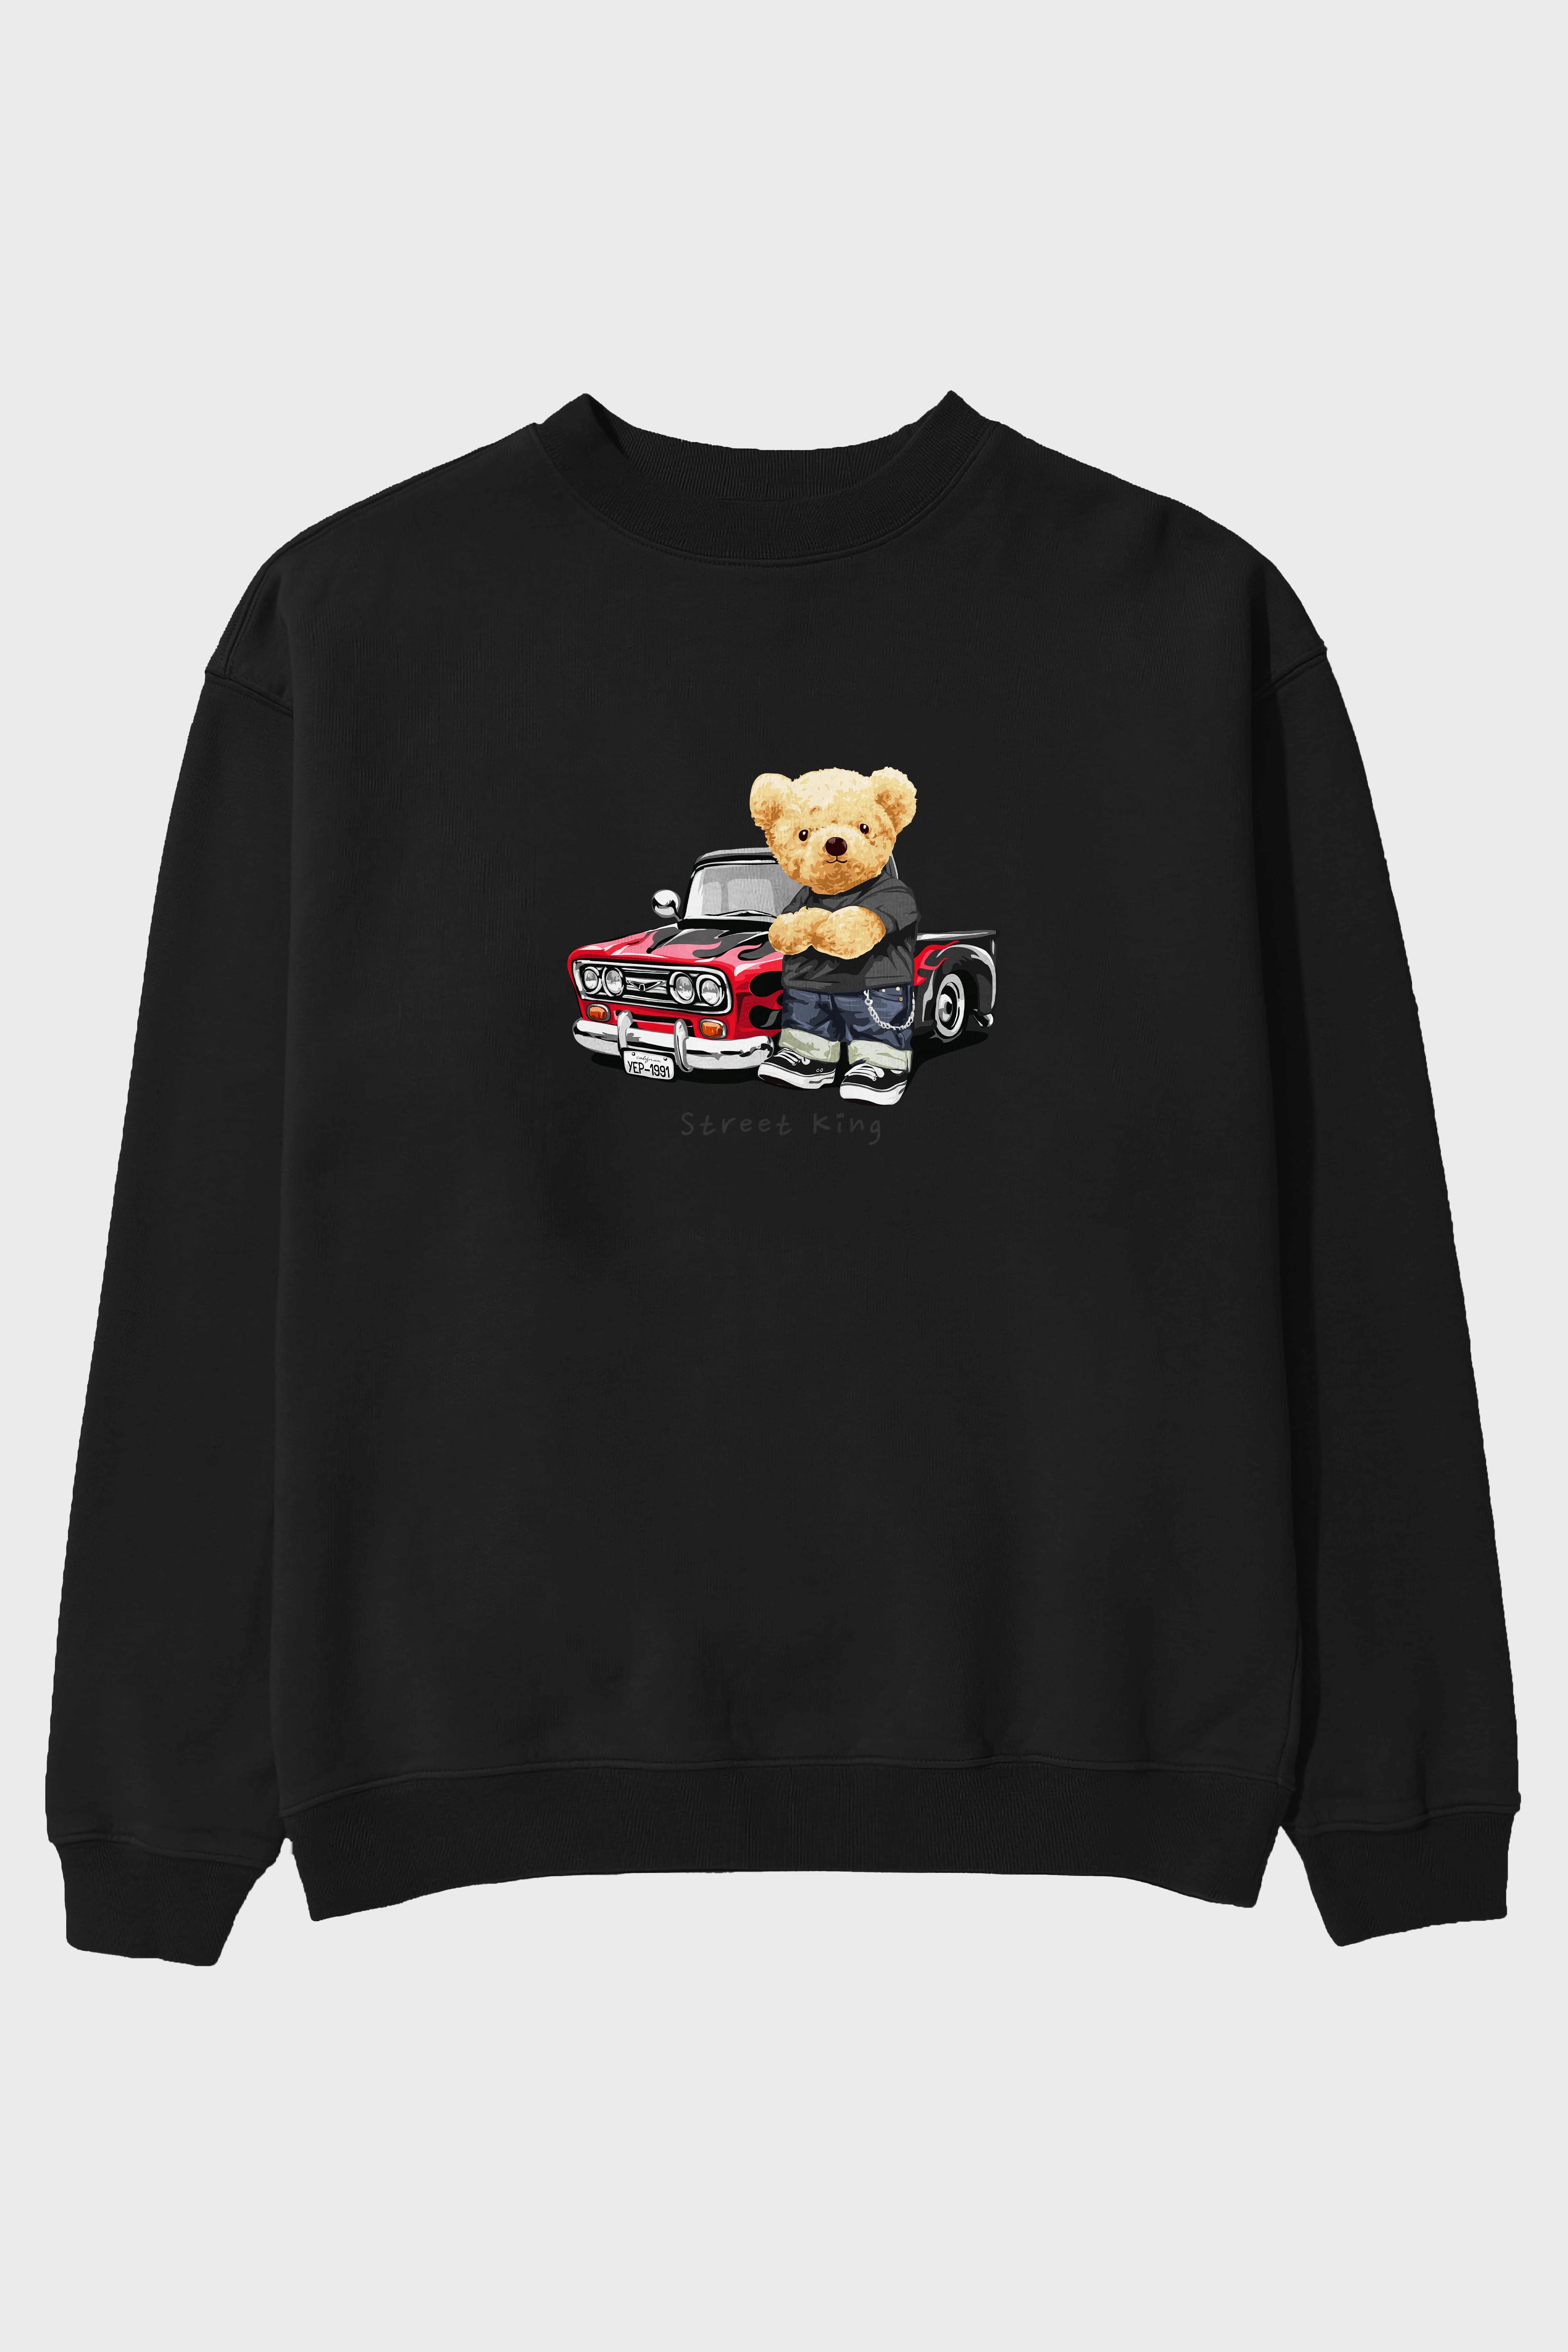 Teddy Bear Street King Ön Baskılı Oversize Sweatshirt Erkek Kadın Unisex